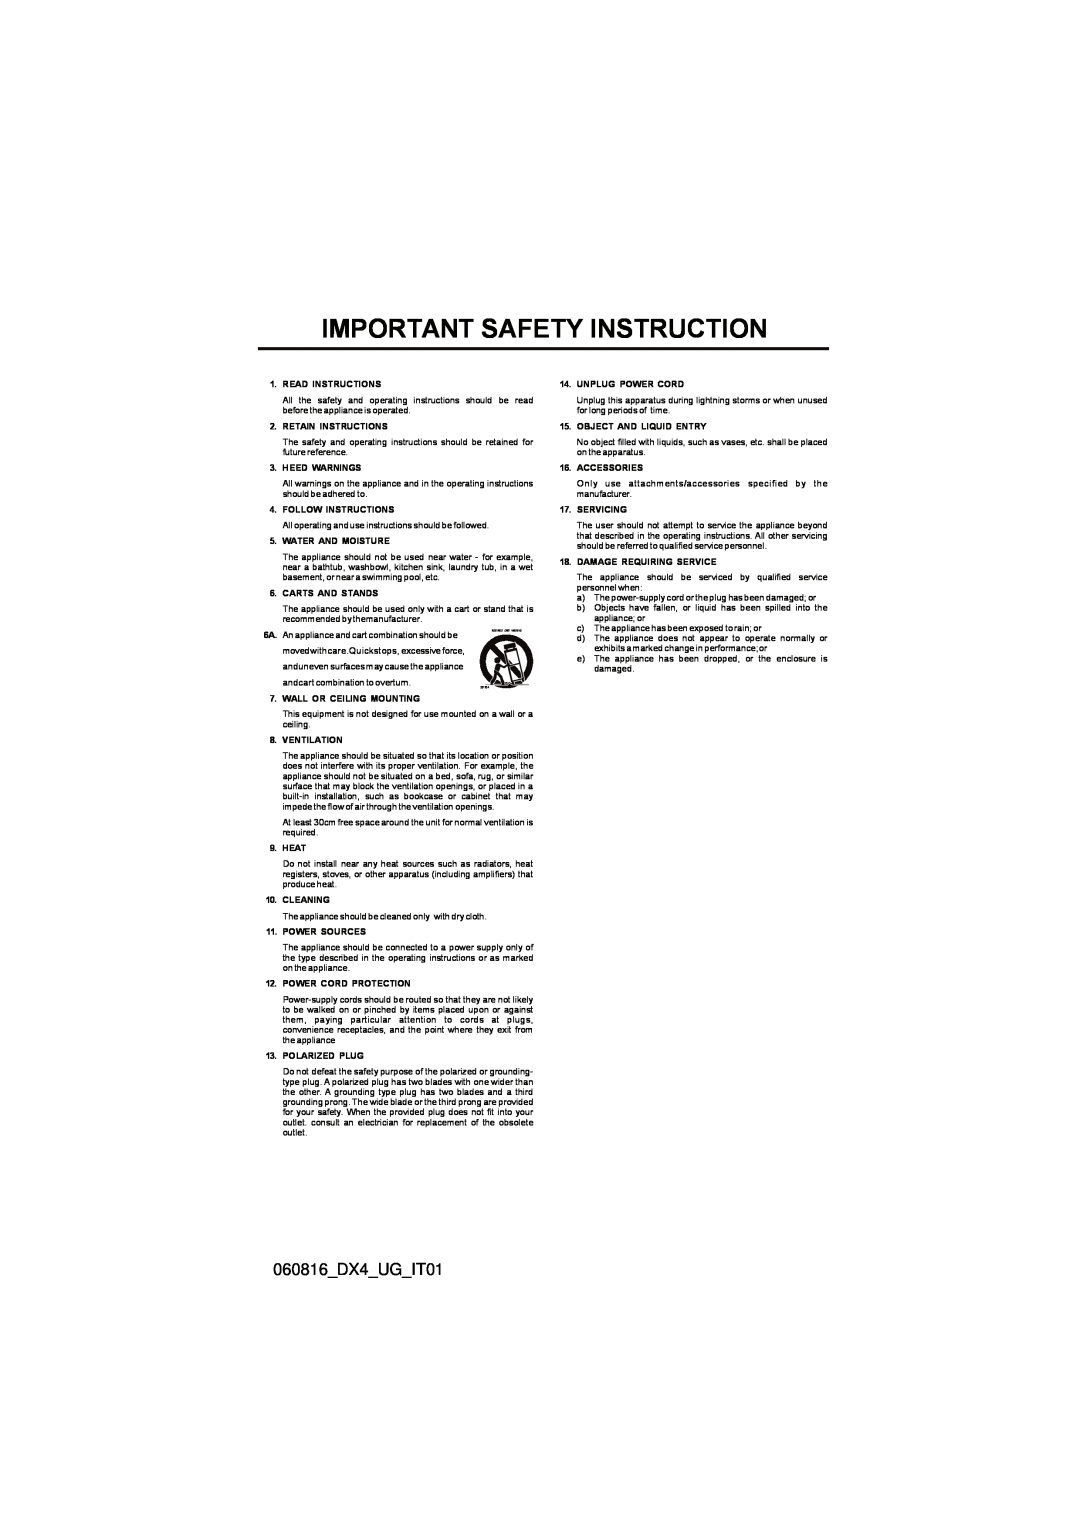 M-Audio manual 060816DX4UGIT01, Important Safety Instruction 